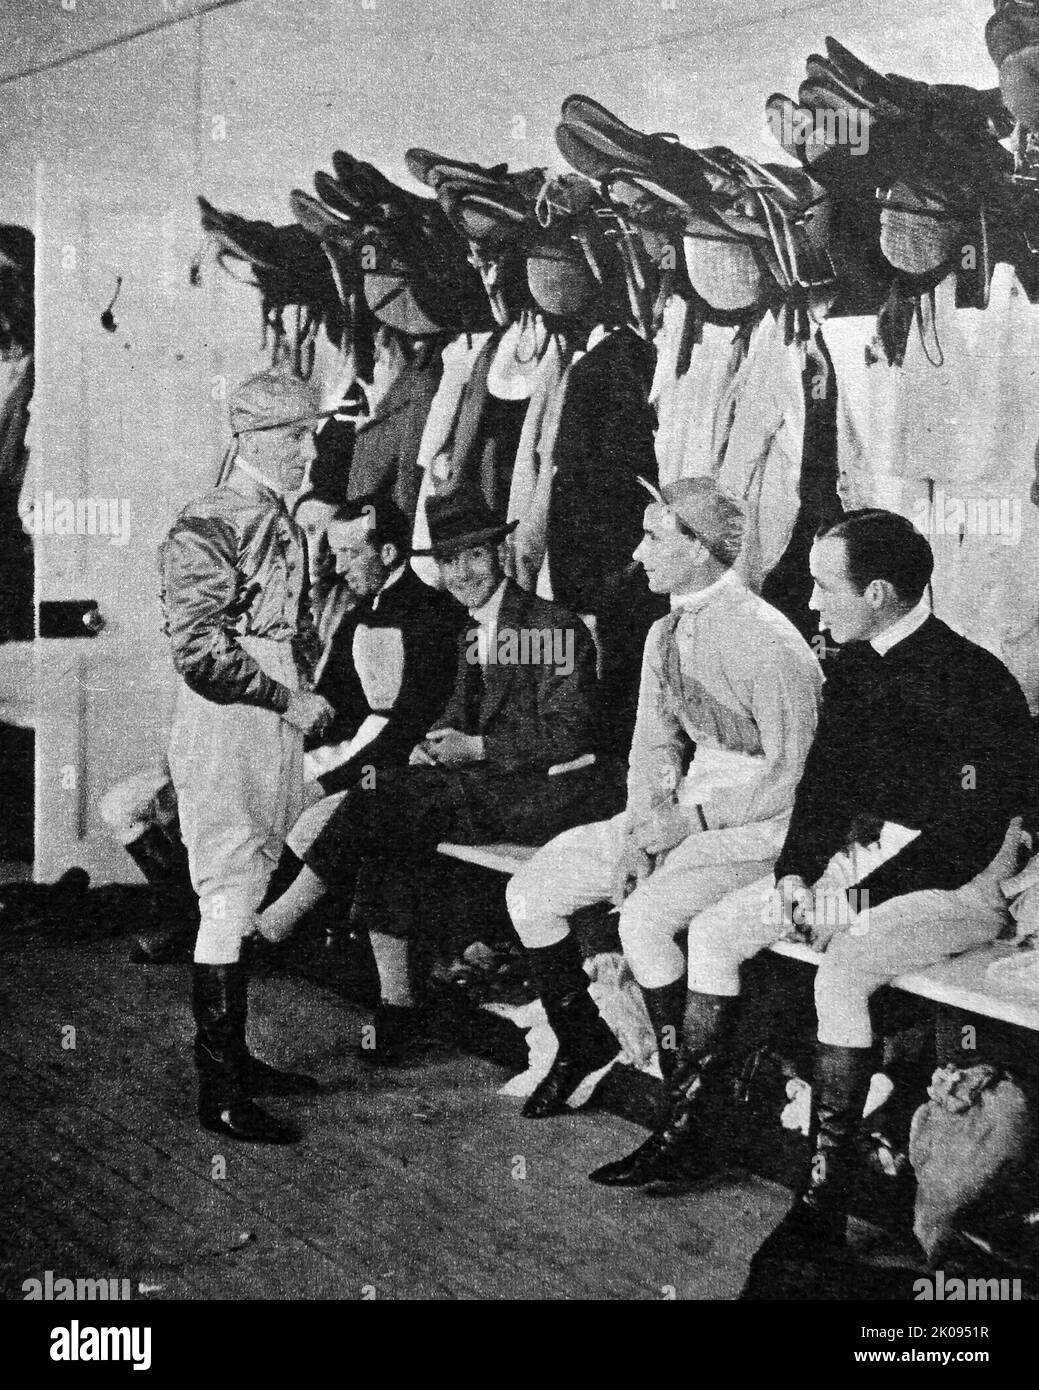 Jockey Archie Burns im Gespräch mit seinen Jockeys im Wiegeraum vor dem nächsten Rennen. Illustrierte Nachrichten schneiden. Der schottische Leichtgewicht-Jockey Archibald Burns wurde am 26. September 1902 in Edinburgh geboren. Er wurde zu Percy Whitaker ausgebildet und machte einen leicht verspäteten Start in seine Reitkarriere, teilweise aufgrund des Großen Krieges. Stockfoto